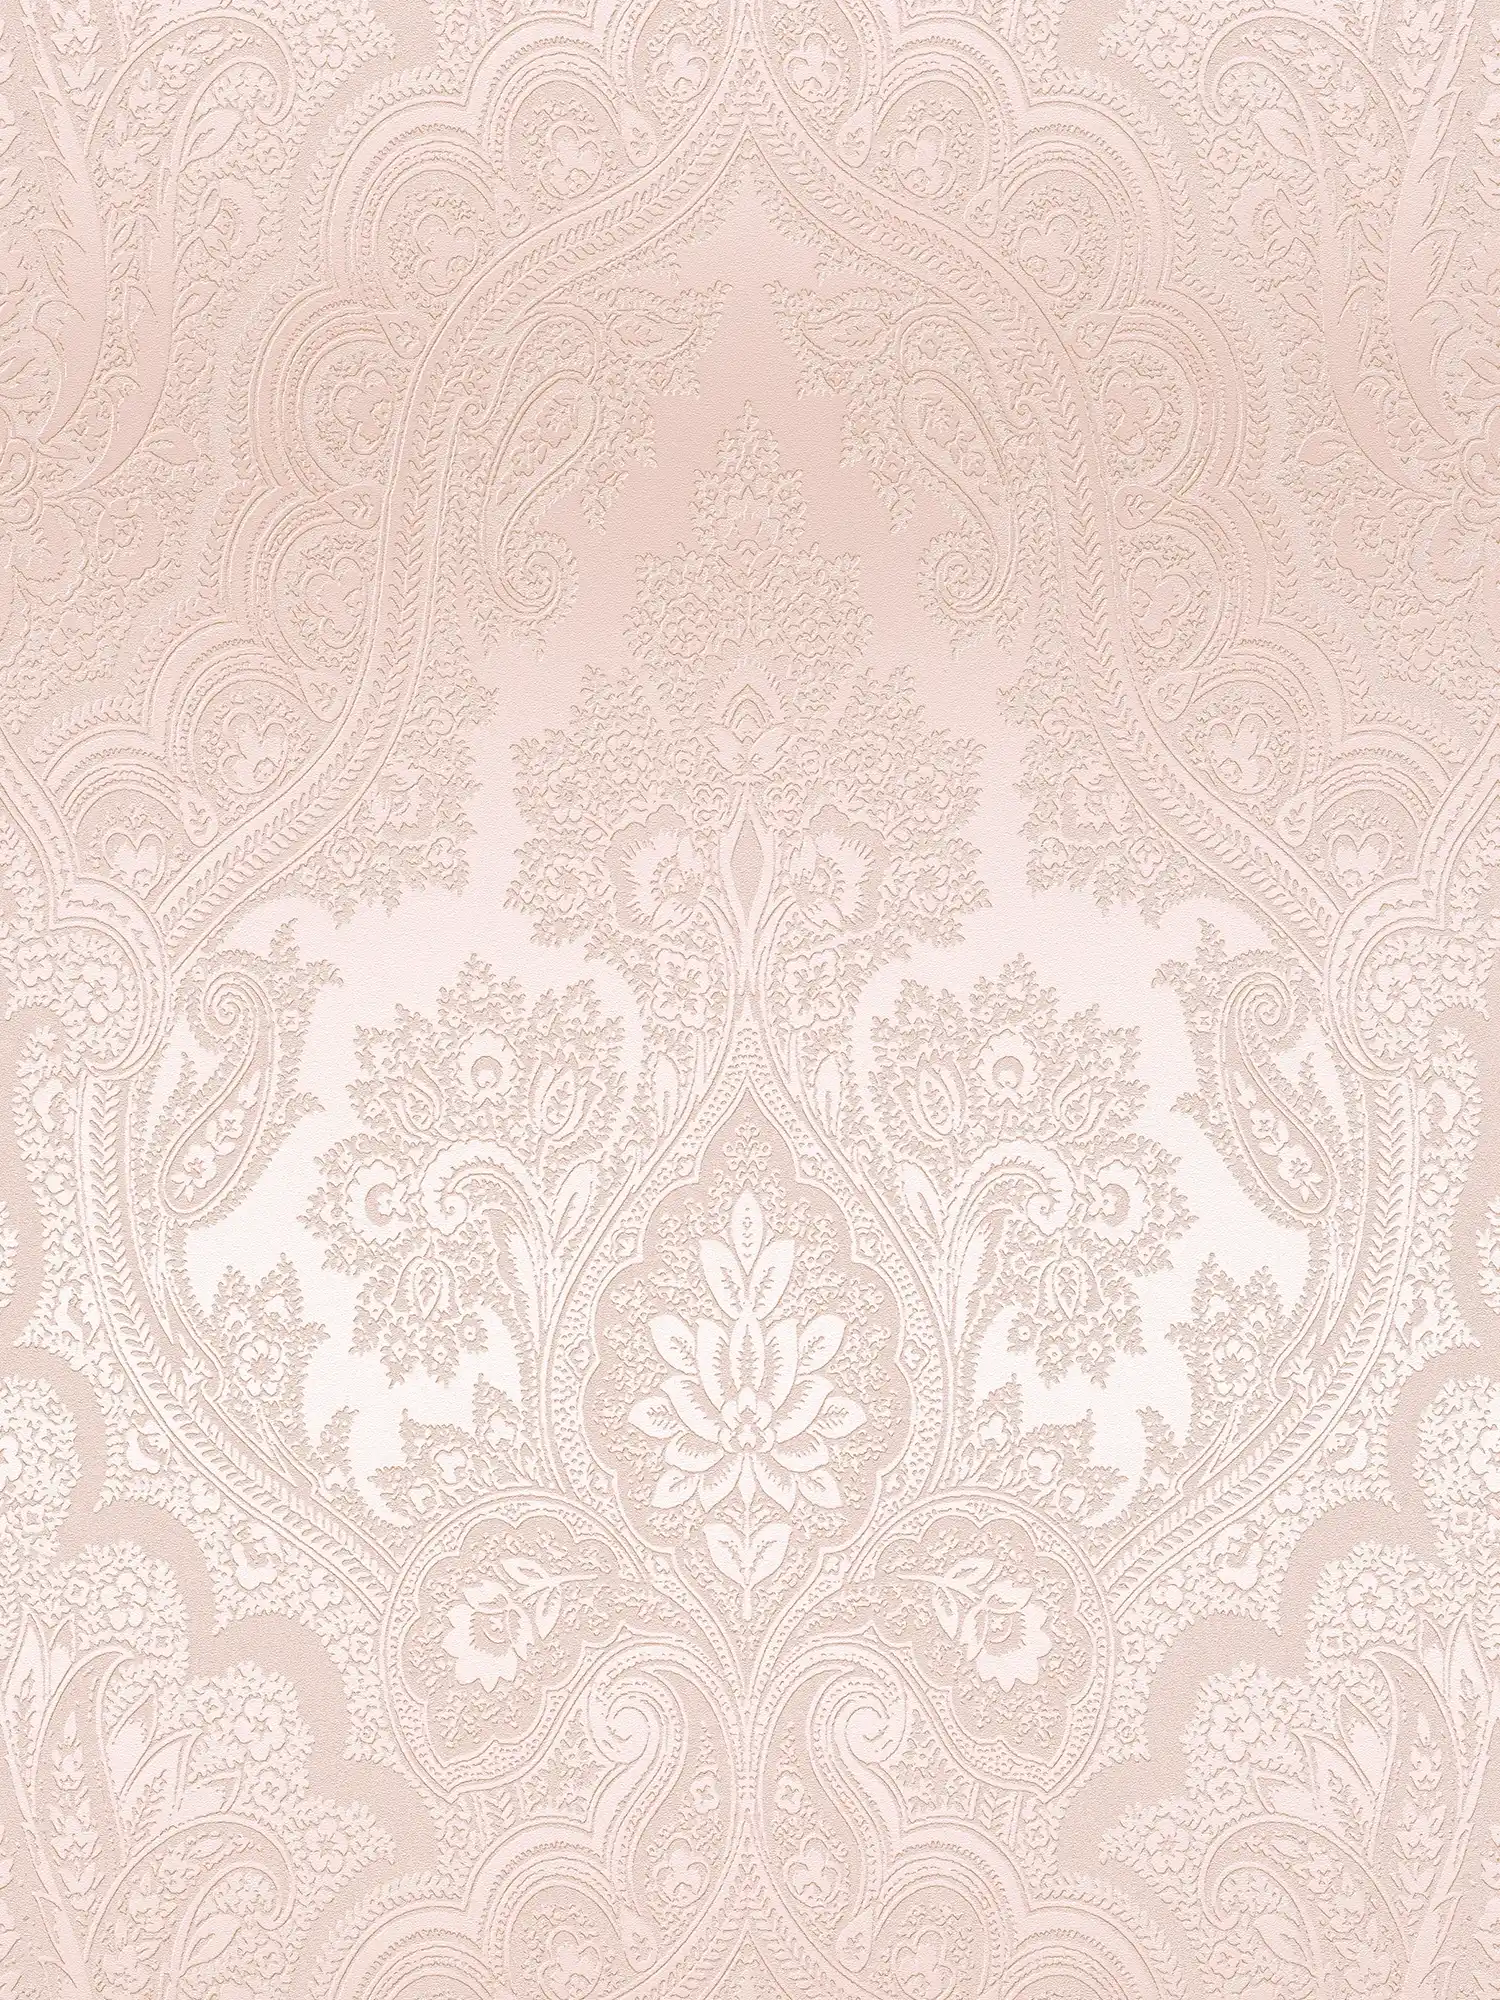 Papier peint boho rose avec motif ornemental - métallique, rose
